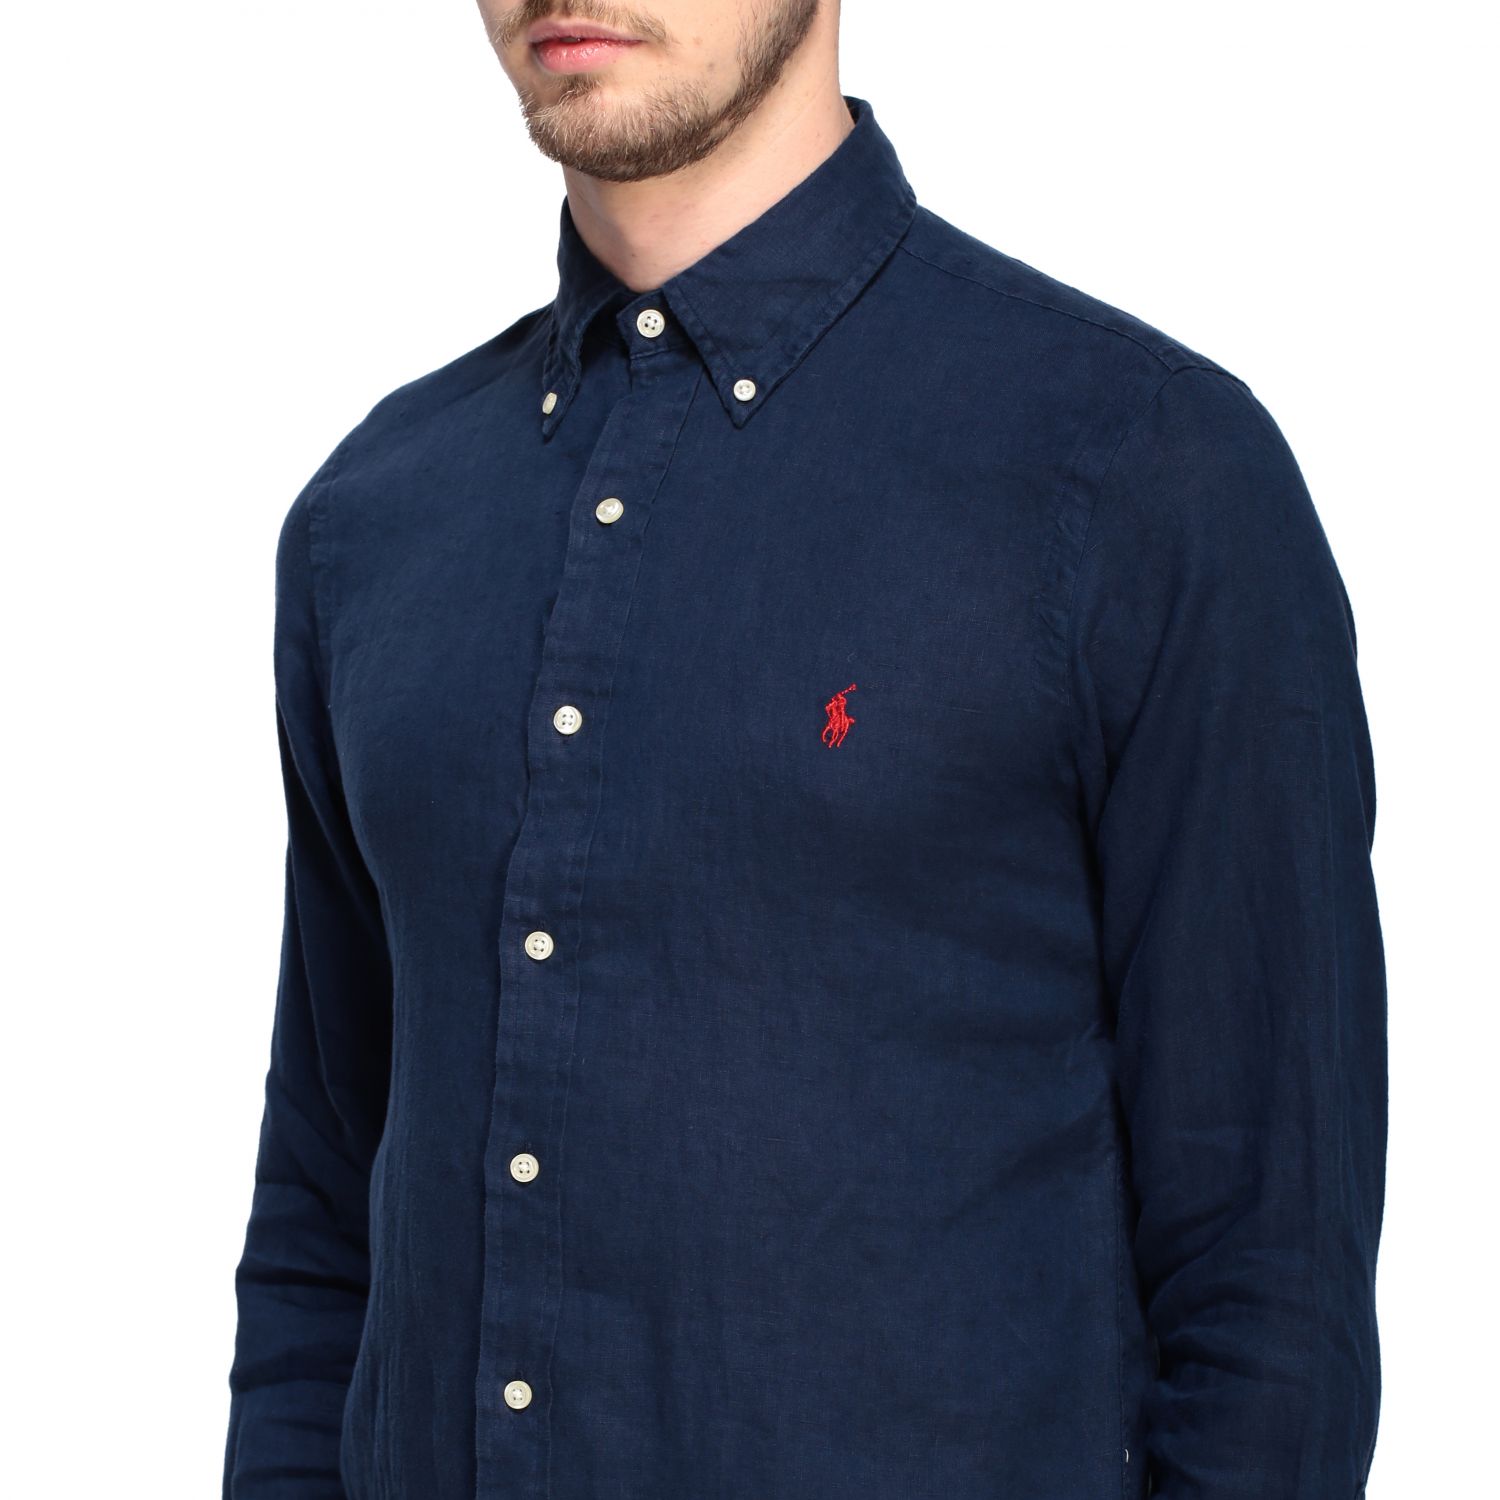 Polo Ralph Lauren linen shirt with 